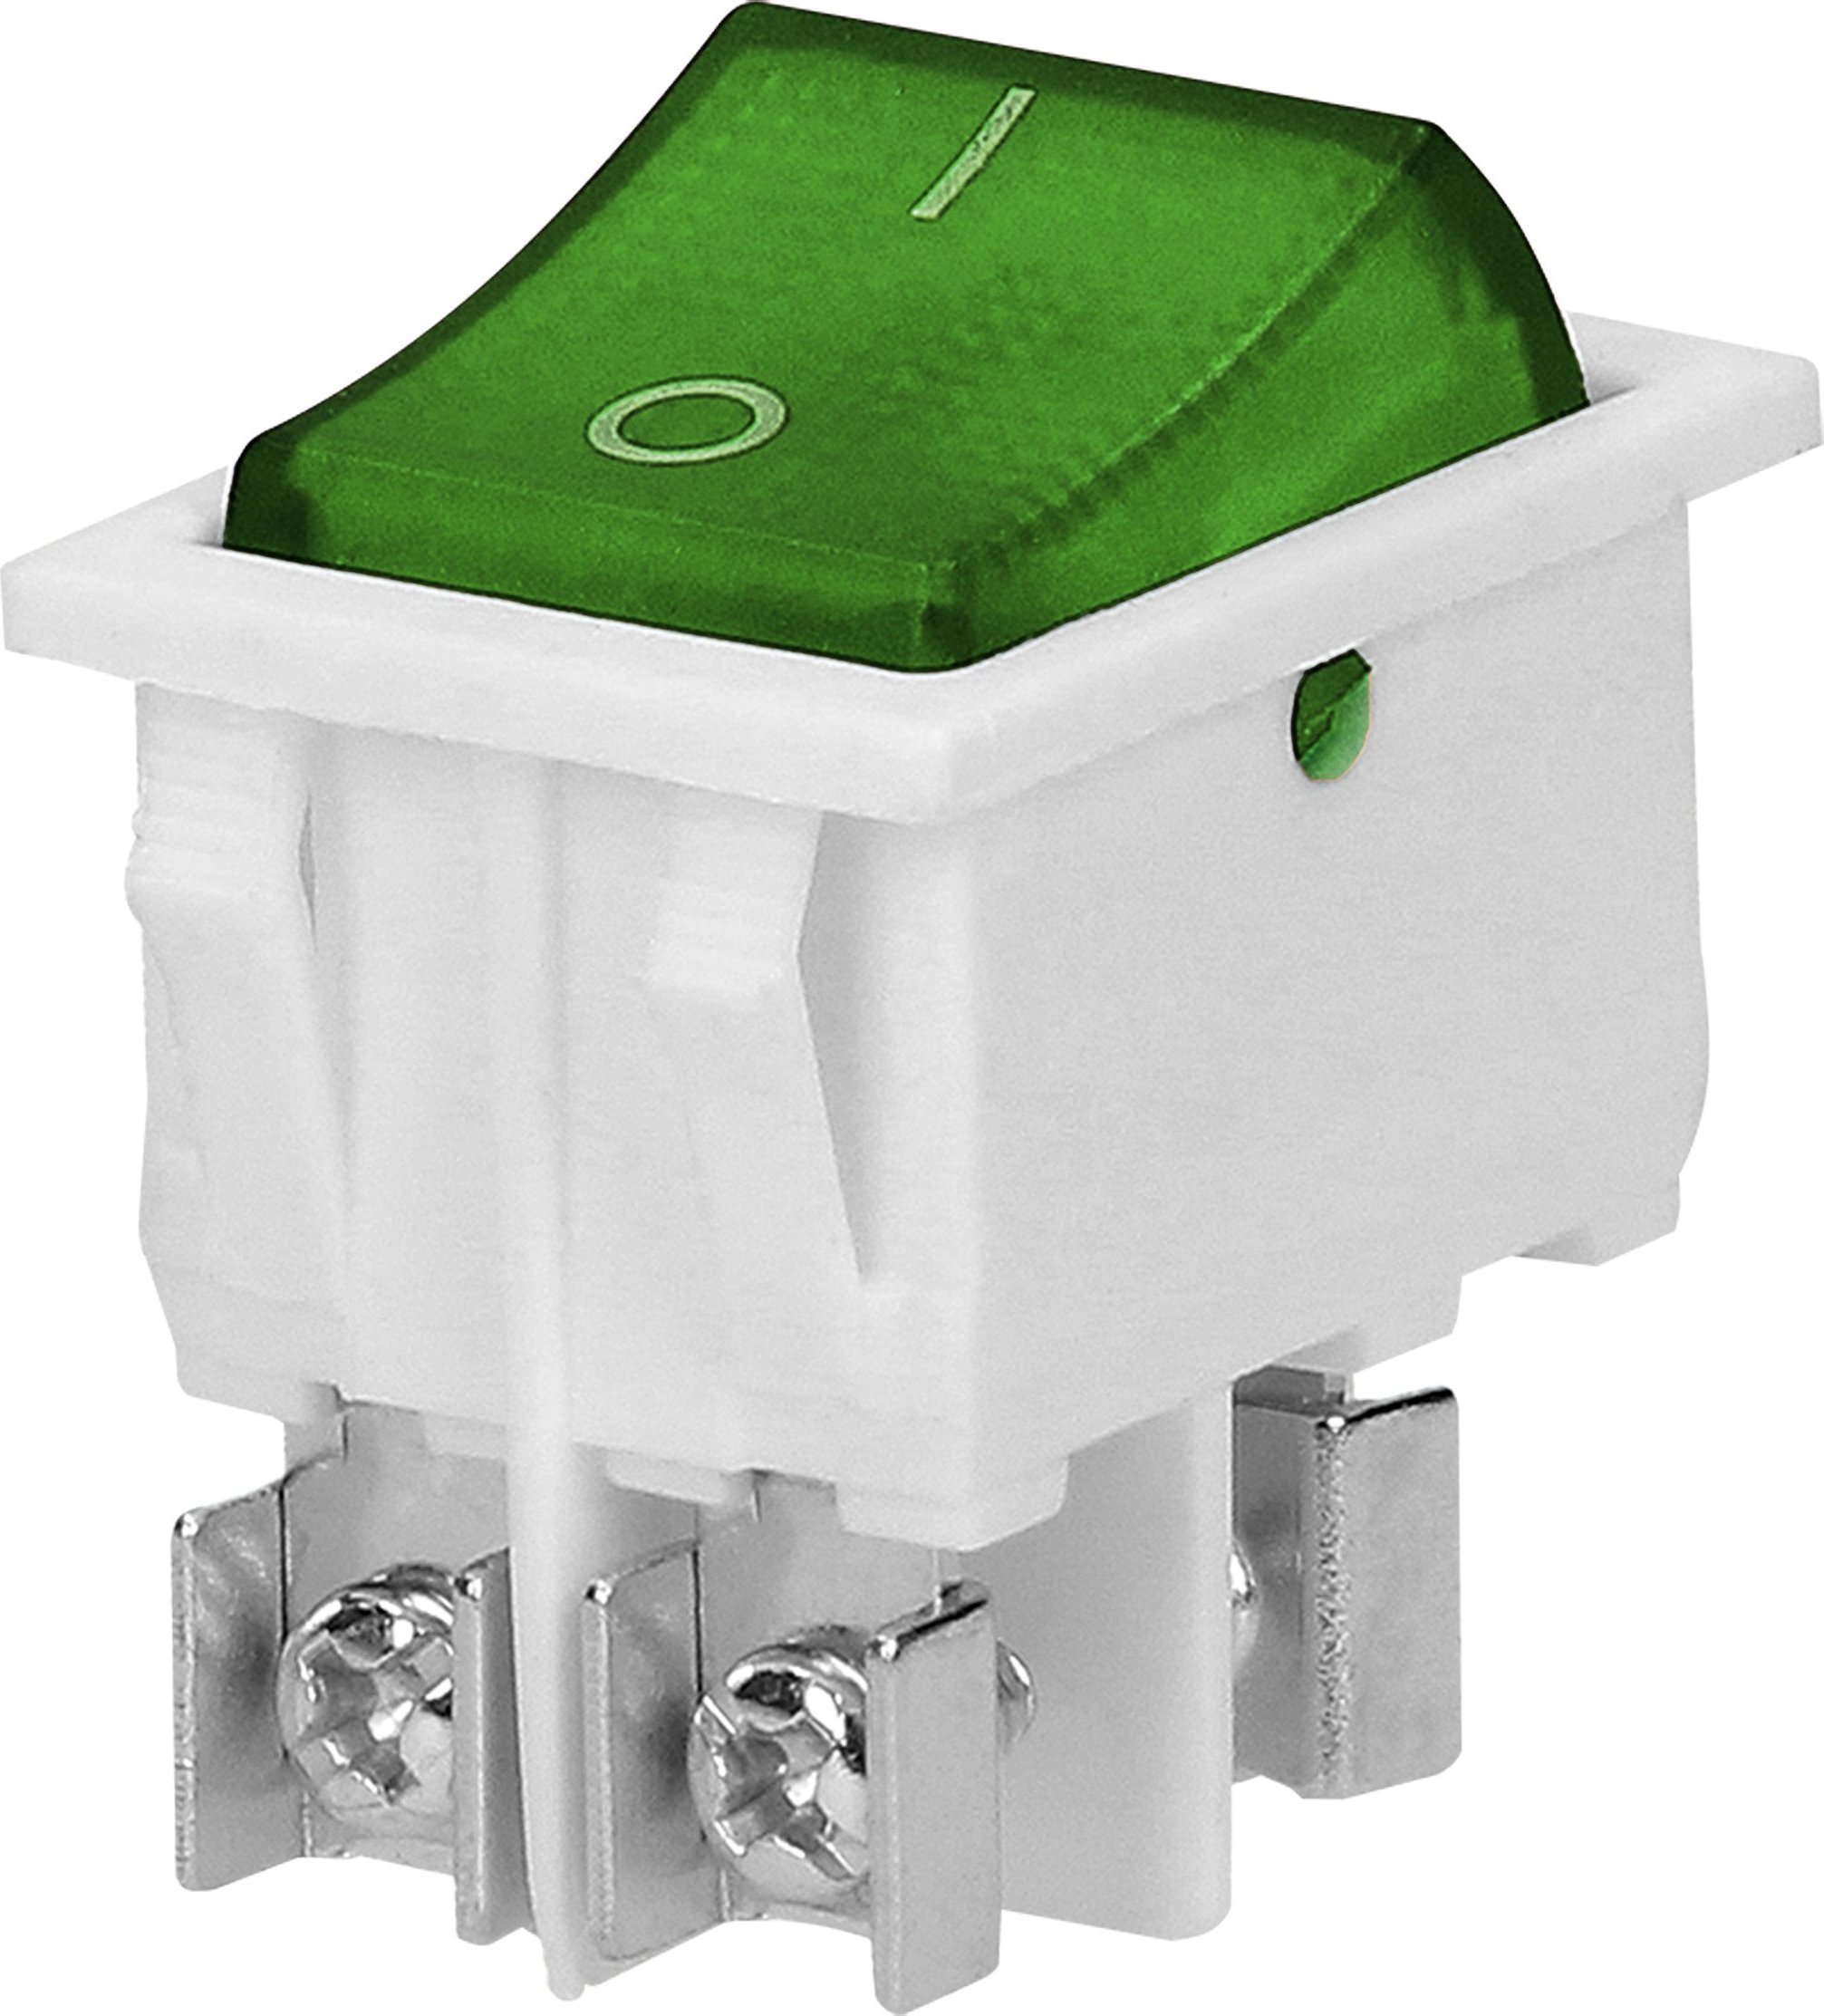 Orno Comutator basculant iluminat, buton verde, carcasă albă